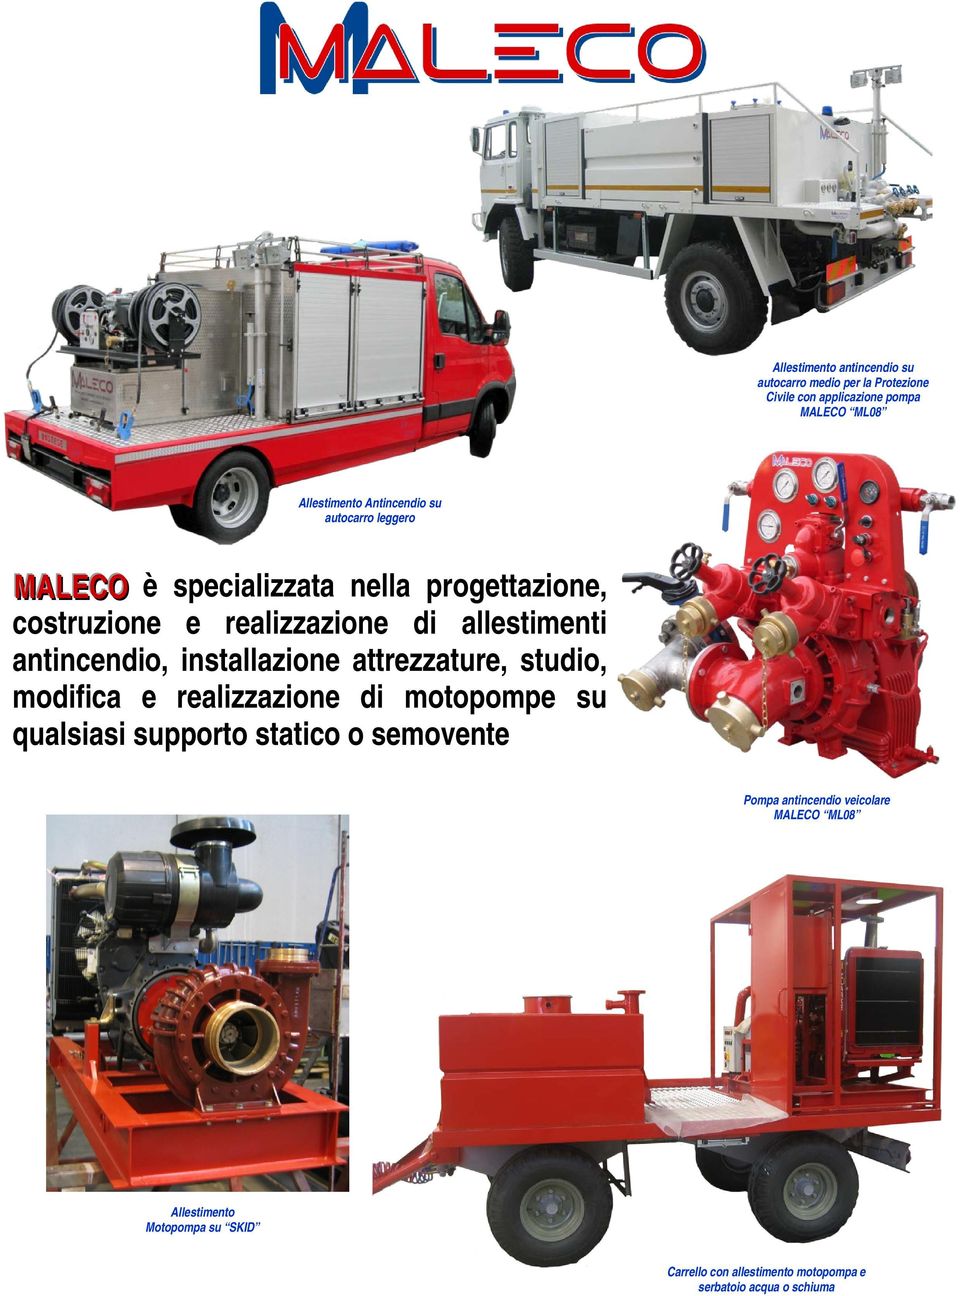 antincendio, installazione attrezzature, studio, modifica e realizzazione di motopompe su qualsiasi supporto statico o